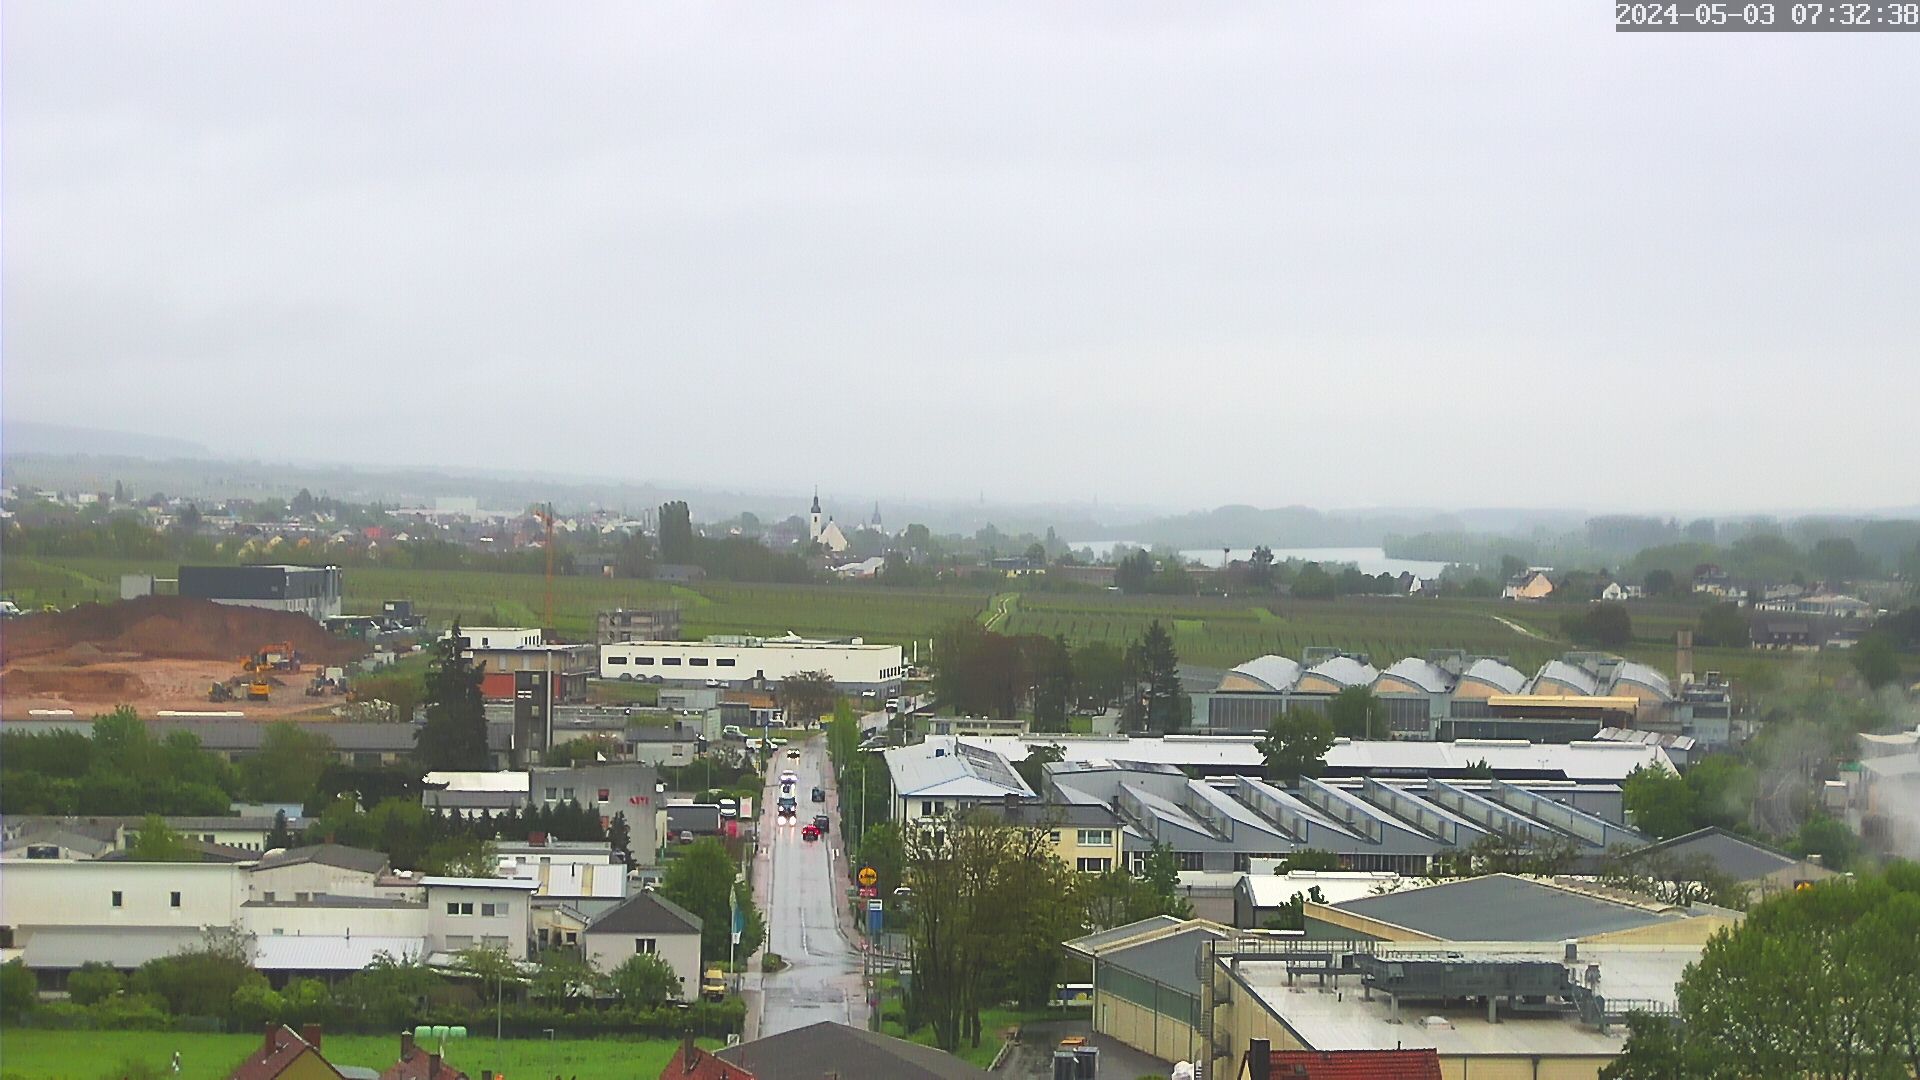 Hier befinden sich 2 Bilder nebeneinander, so dass der Eindruck einer Panorama-Aufnahme entsteht. Mann sieht das gesamte Industriegebiet bis zum Rhein.